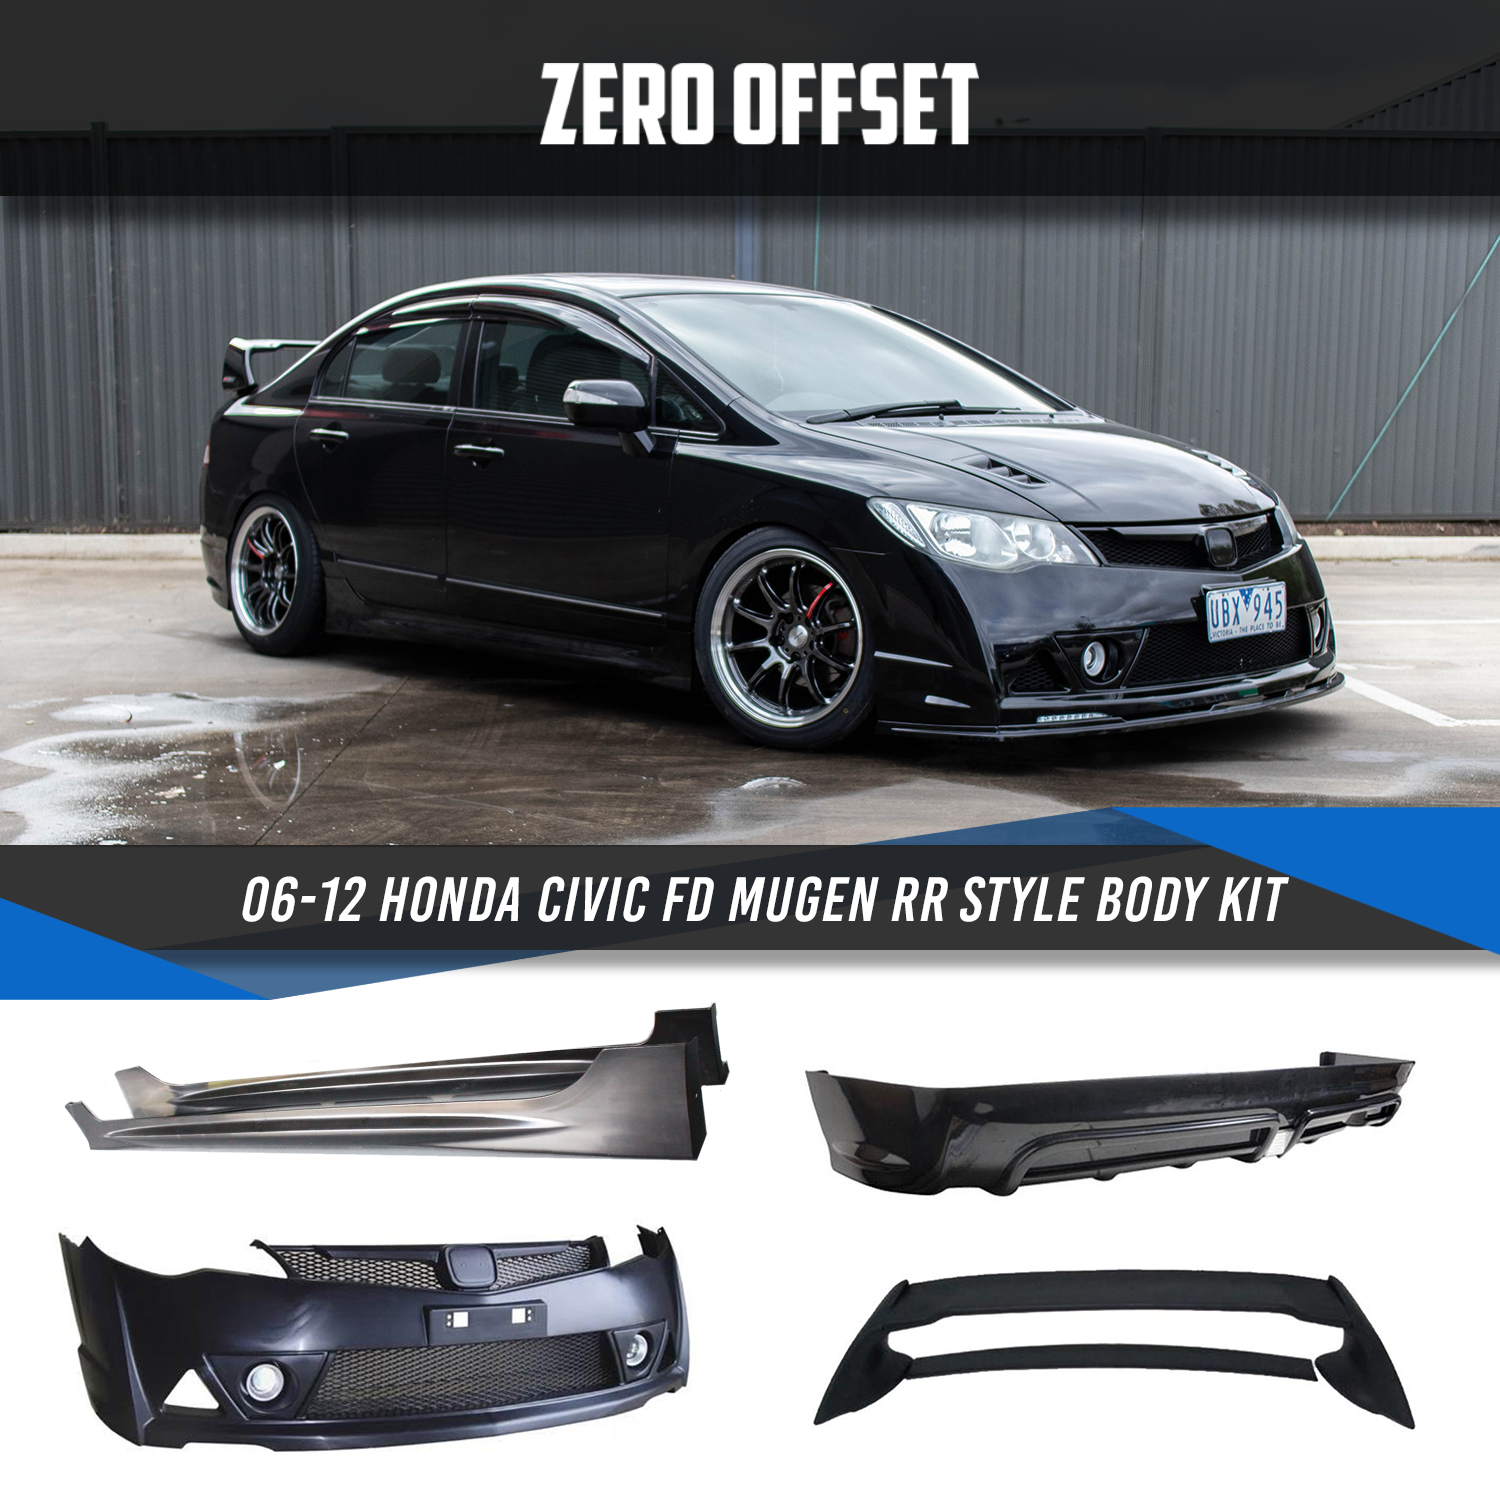 Zero Offset Mugen RR Style Body Kit for 06-12 Honda Civic FD